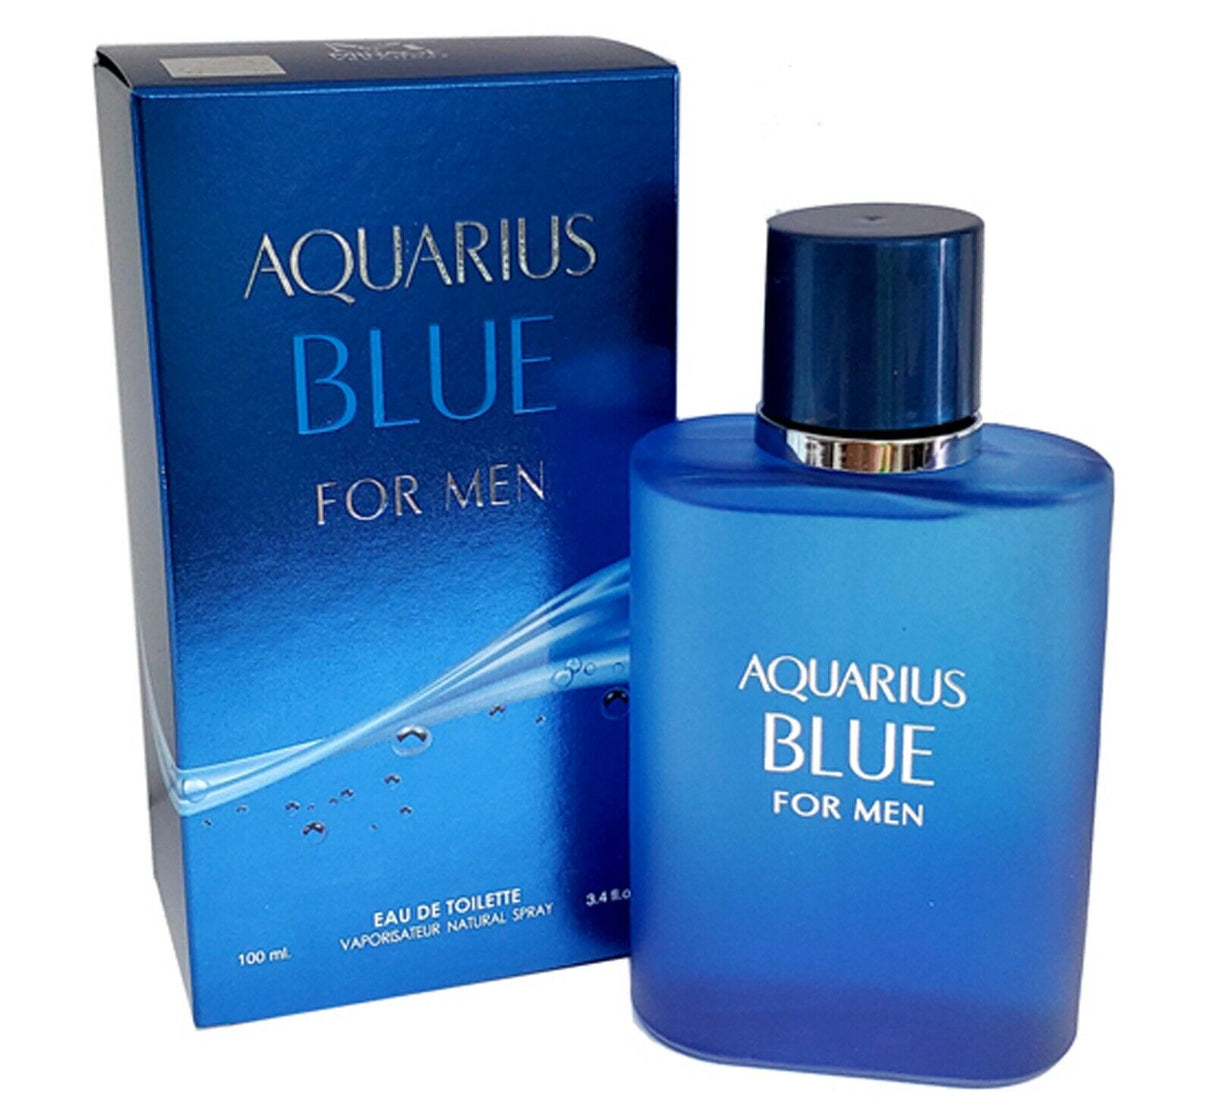 Aquarius Blue for Men, Men's Perfume